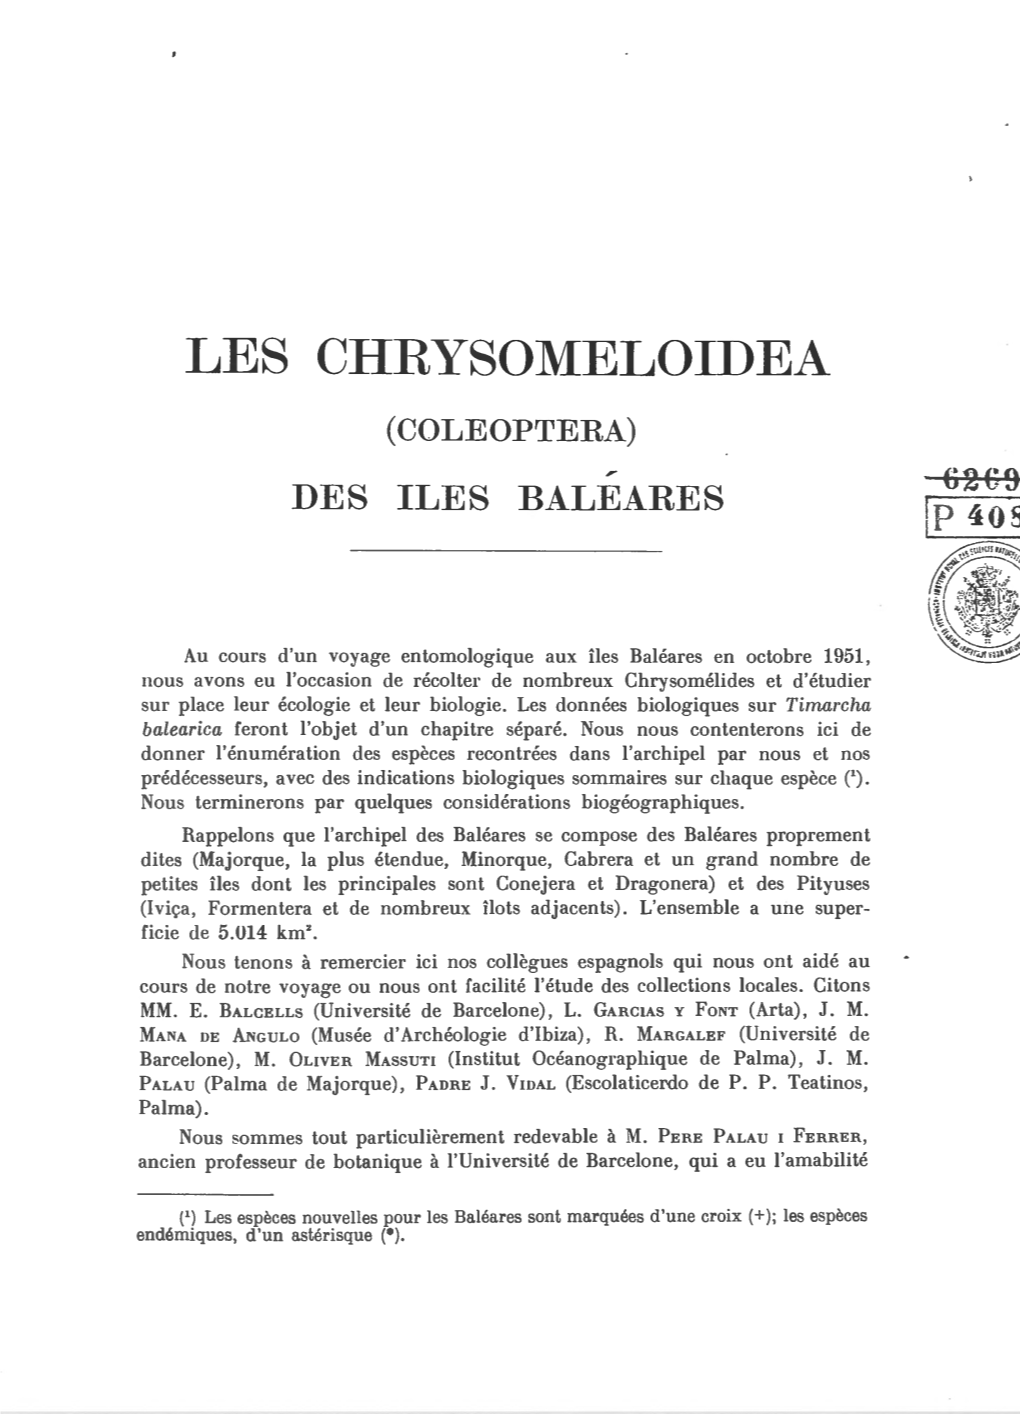 Les Chrysomeloidea